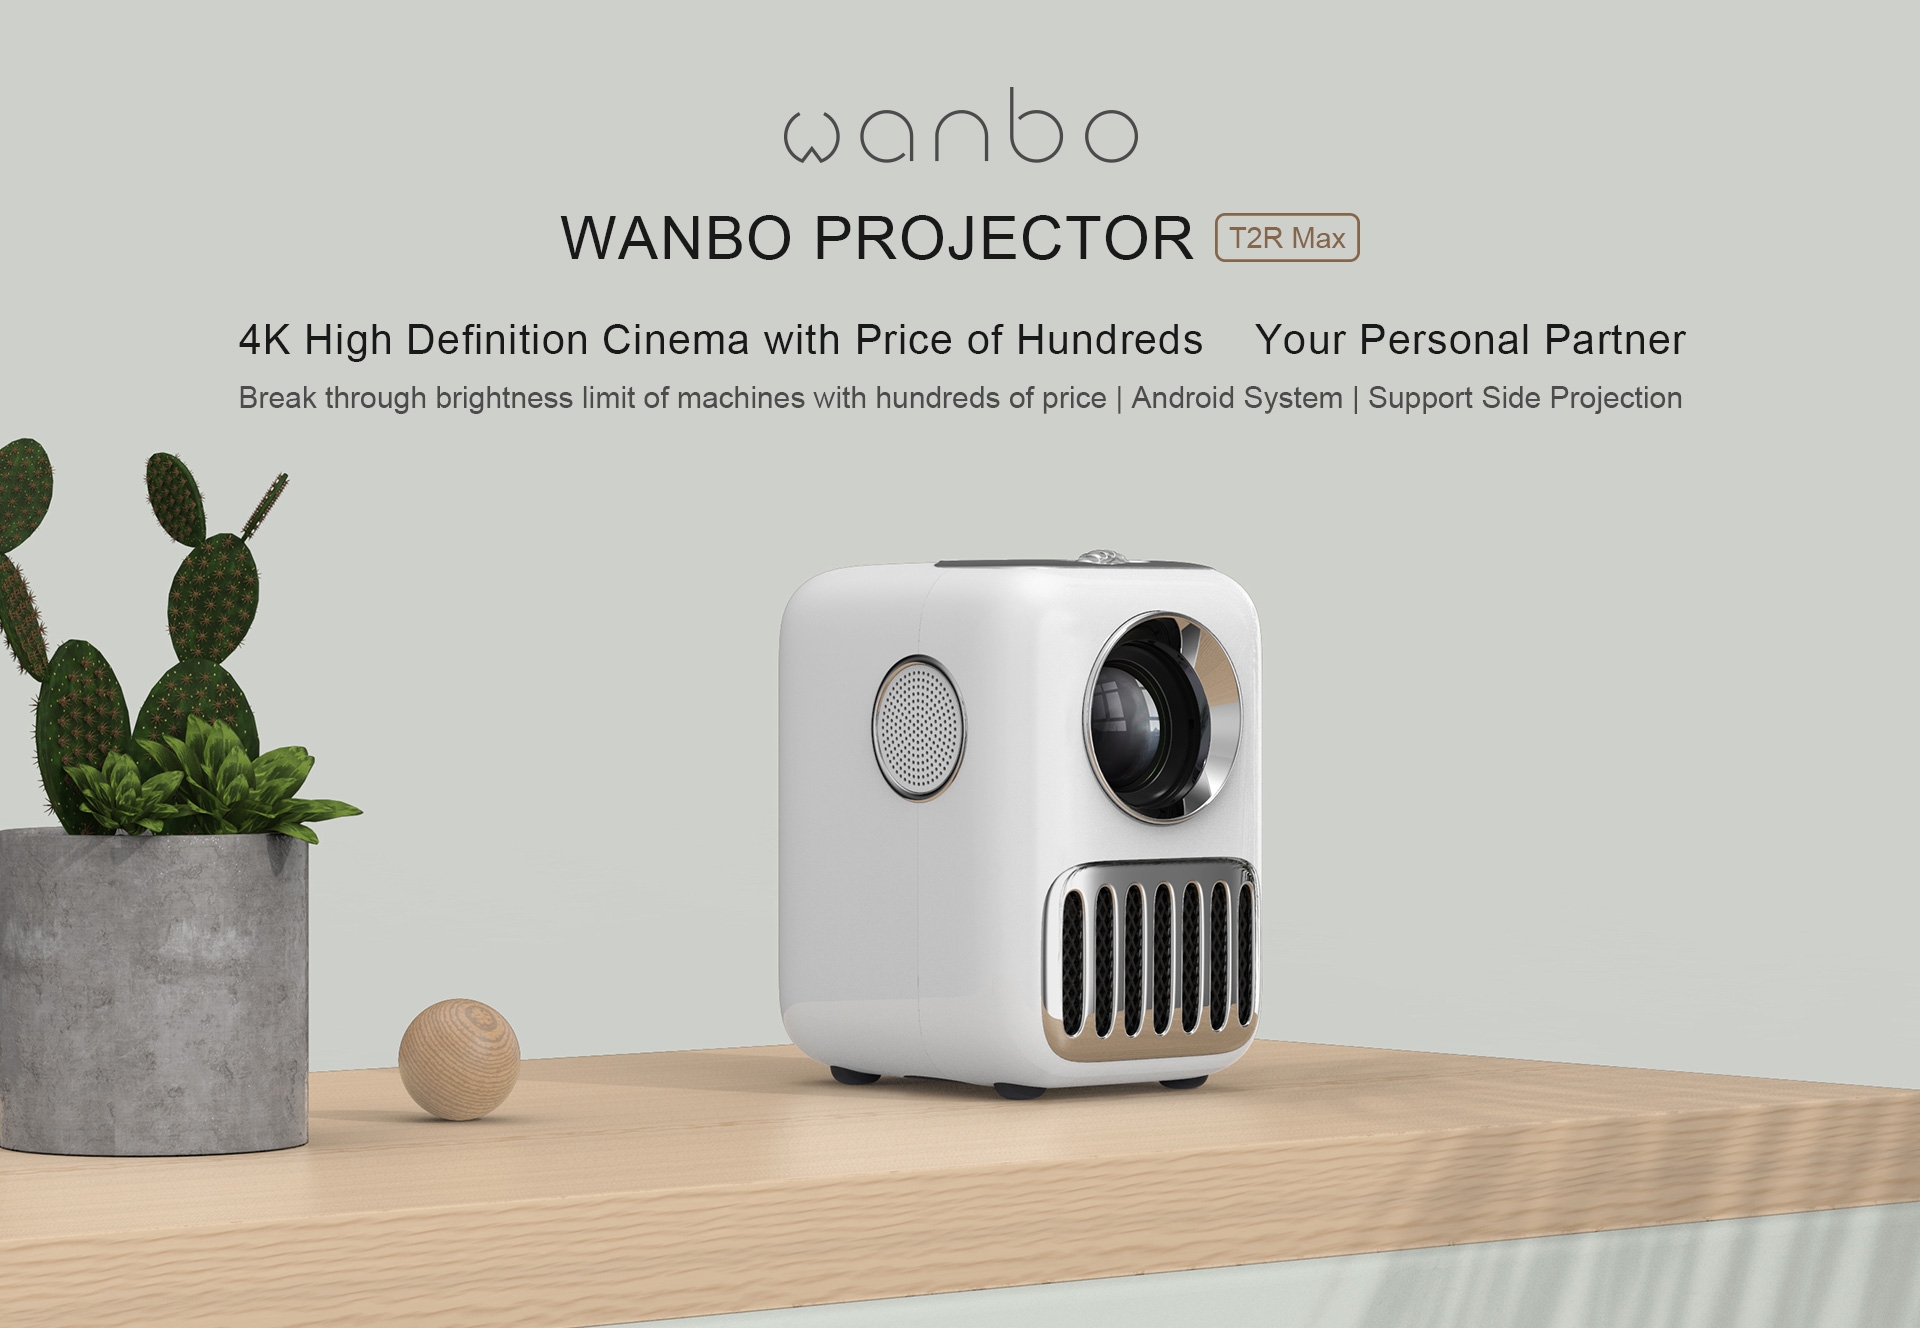 بروجكتر منزلي اندرويد ذكي وانبو تي 2 ار ماكس 120 بوصة Wanbo T2R Max Android 9.0 250 Ansi Lumens - 7}